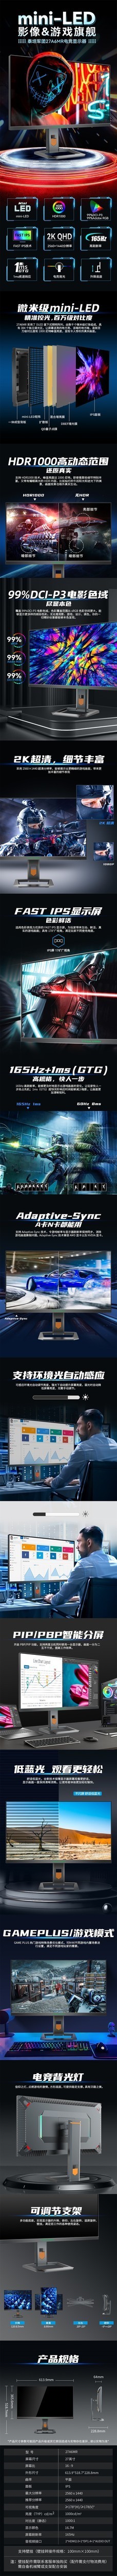 mini-LED影像&游戏旗舰 泰坦军团27A6MR电竞显示器免费试用